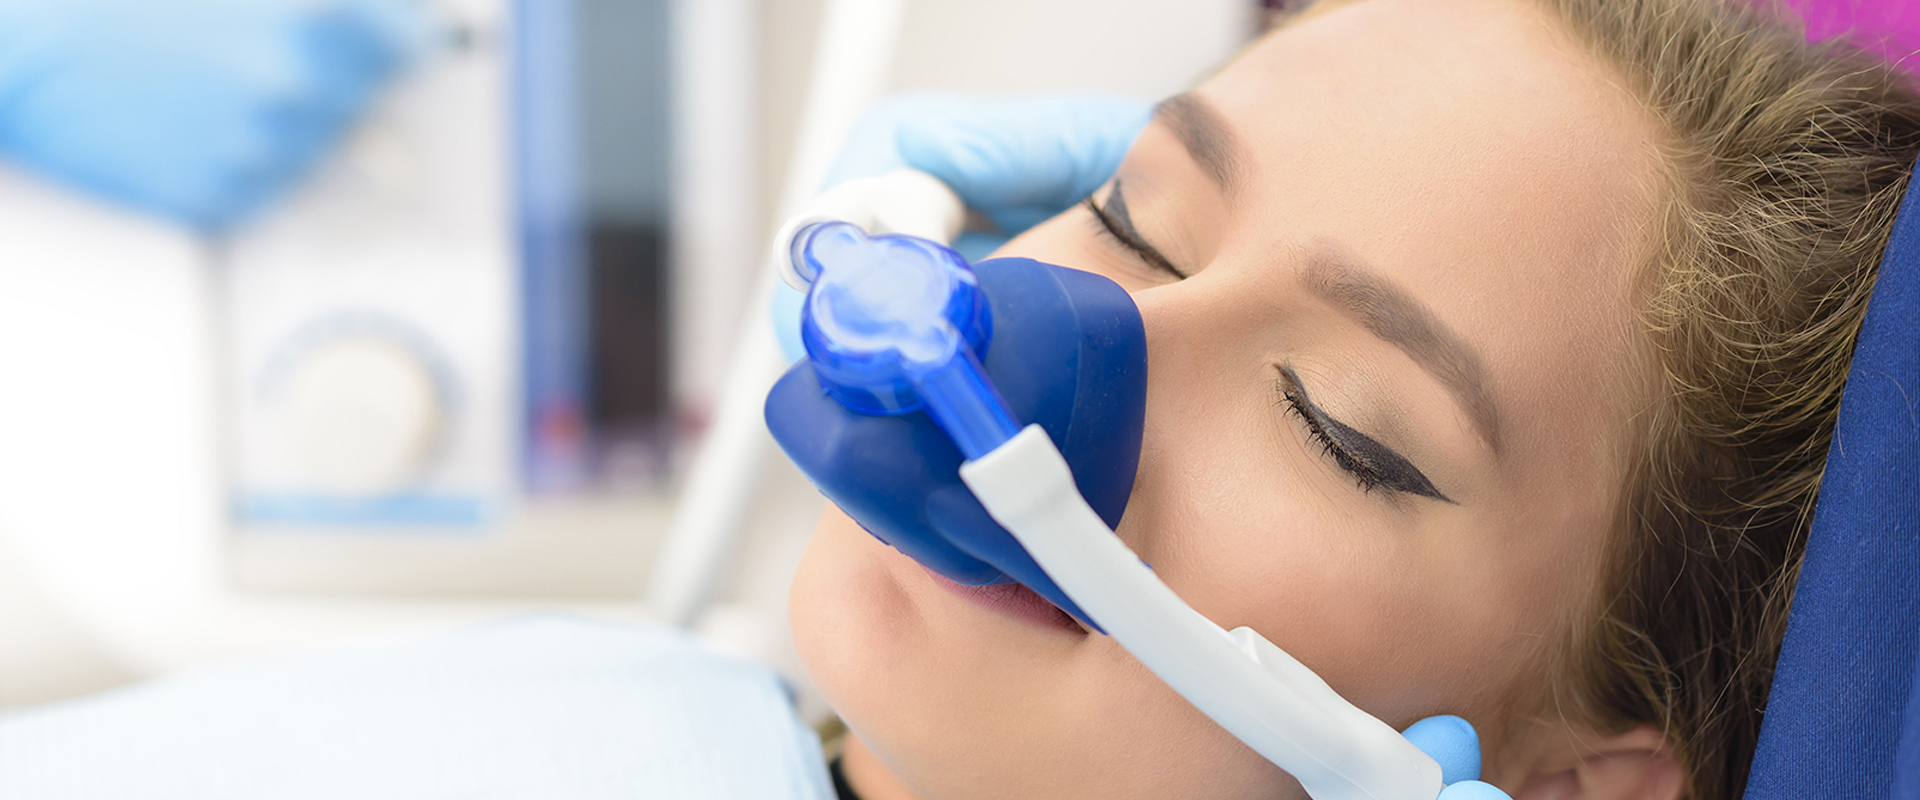 Lachgasbehandlung bei Angstpatienten | Zahnarzt Dr. K-H Königshofer -Mund-, Kiefer- und Gesichtschirurgie